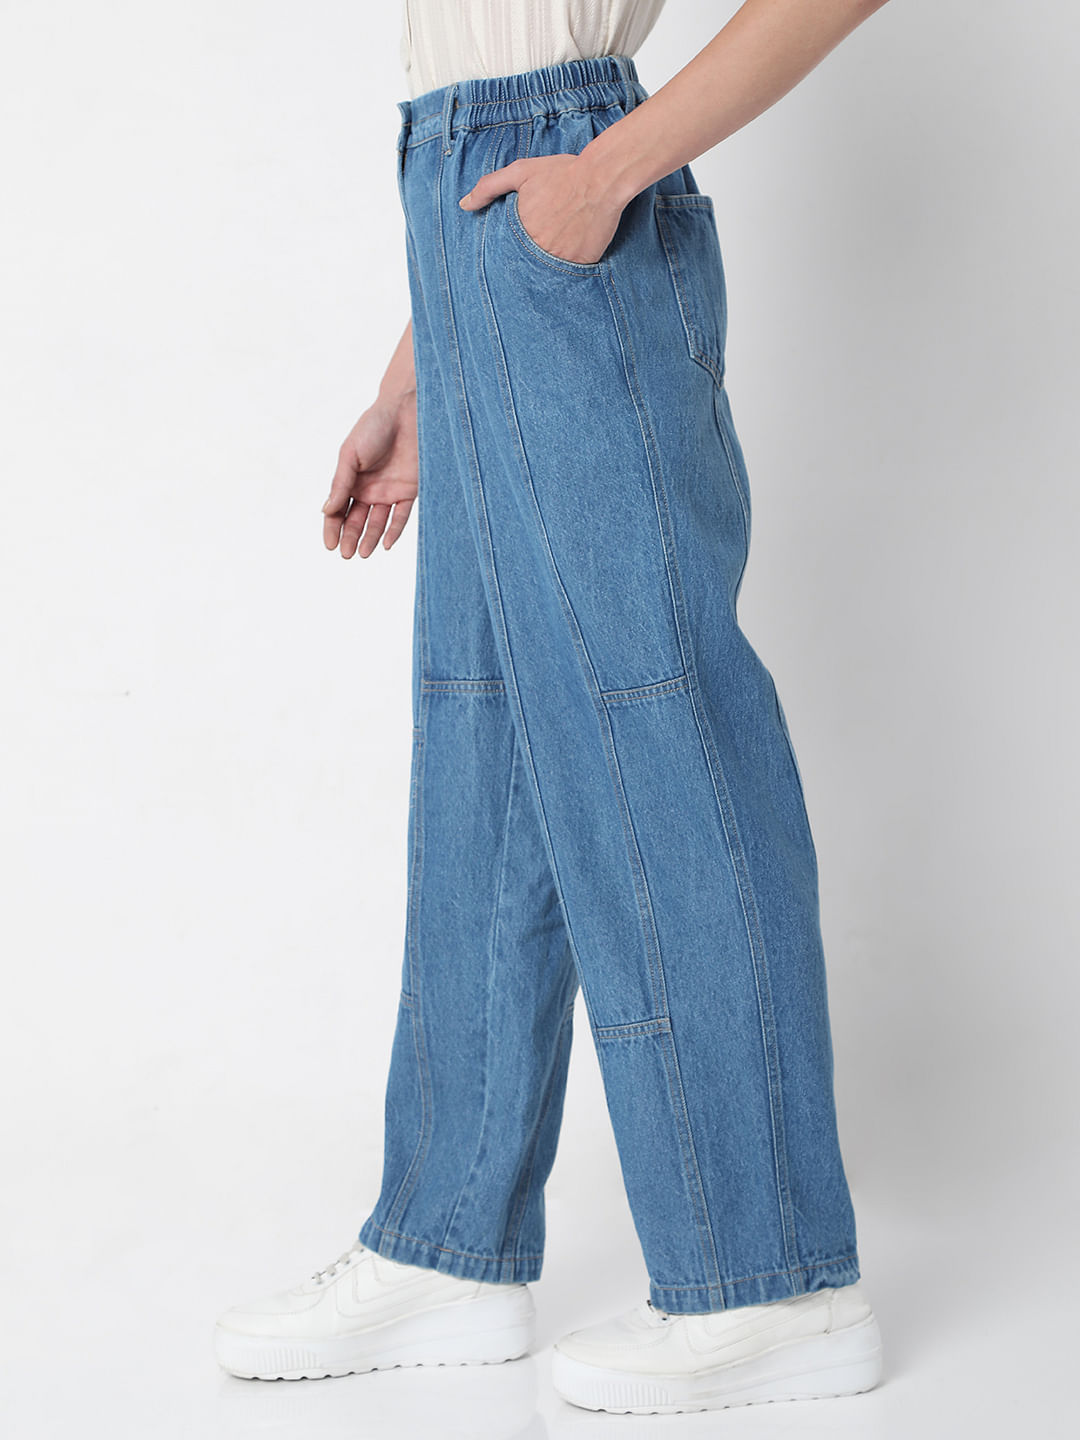 Powder Blue Pants  35 Pant Outfit Ideas That  Gasp  Arent Jeans   POPSUGAR Fashion Photo 8